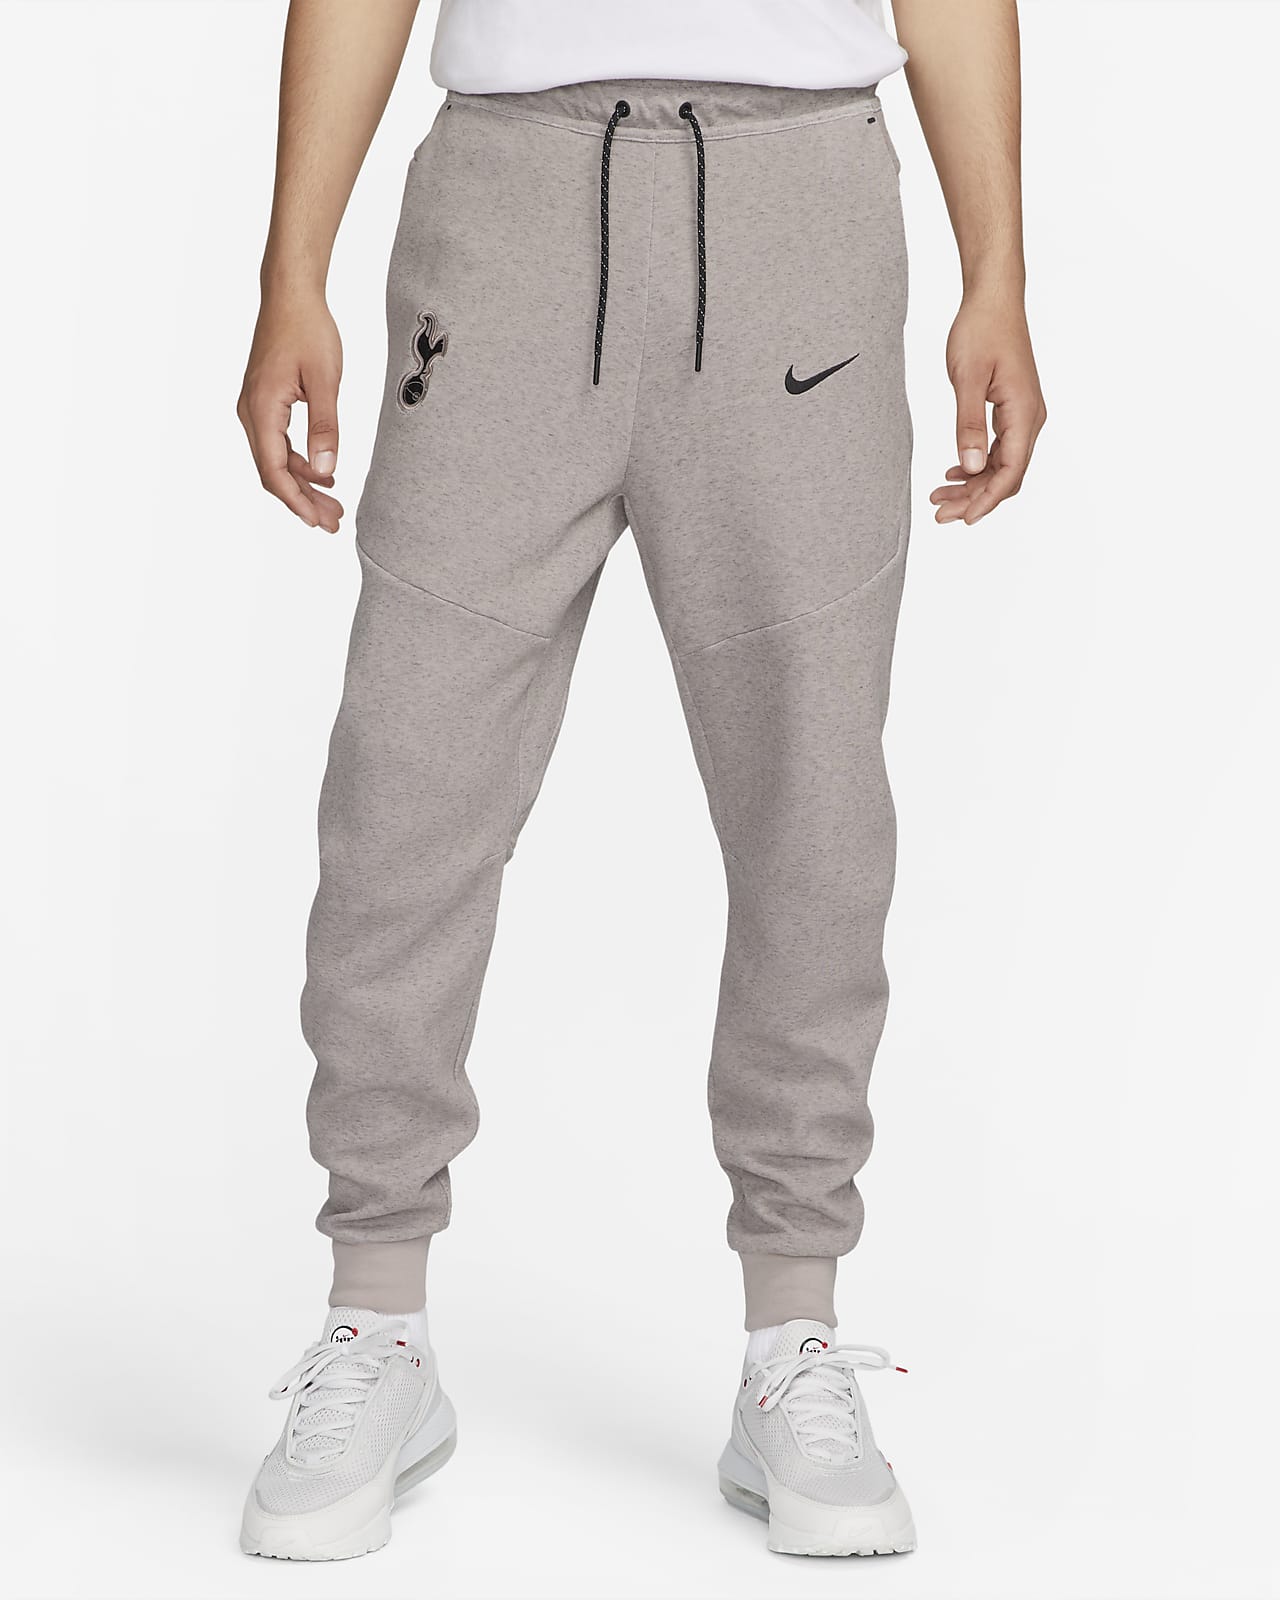 Ανδρικό ποδοσφαιρικό παντελόνι φόρμας Nike εναλλακτικής εμφάνισης Τότεναμ Tech Fleece